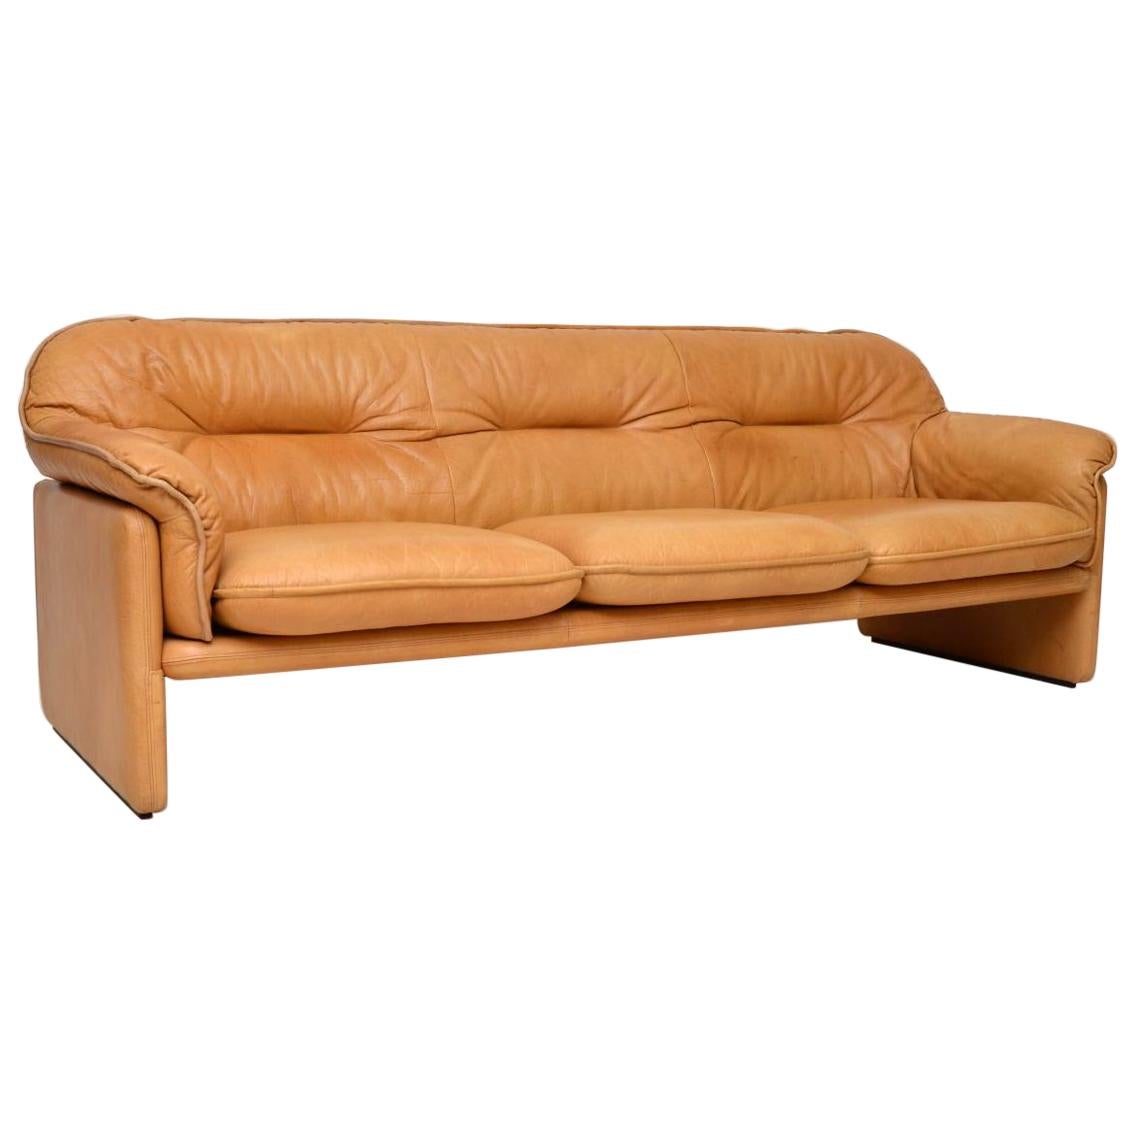 1960s Vintage Leather DS16 Sofa by De Sede